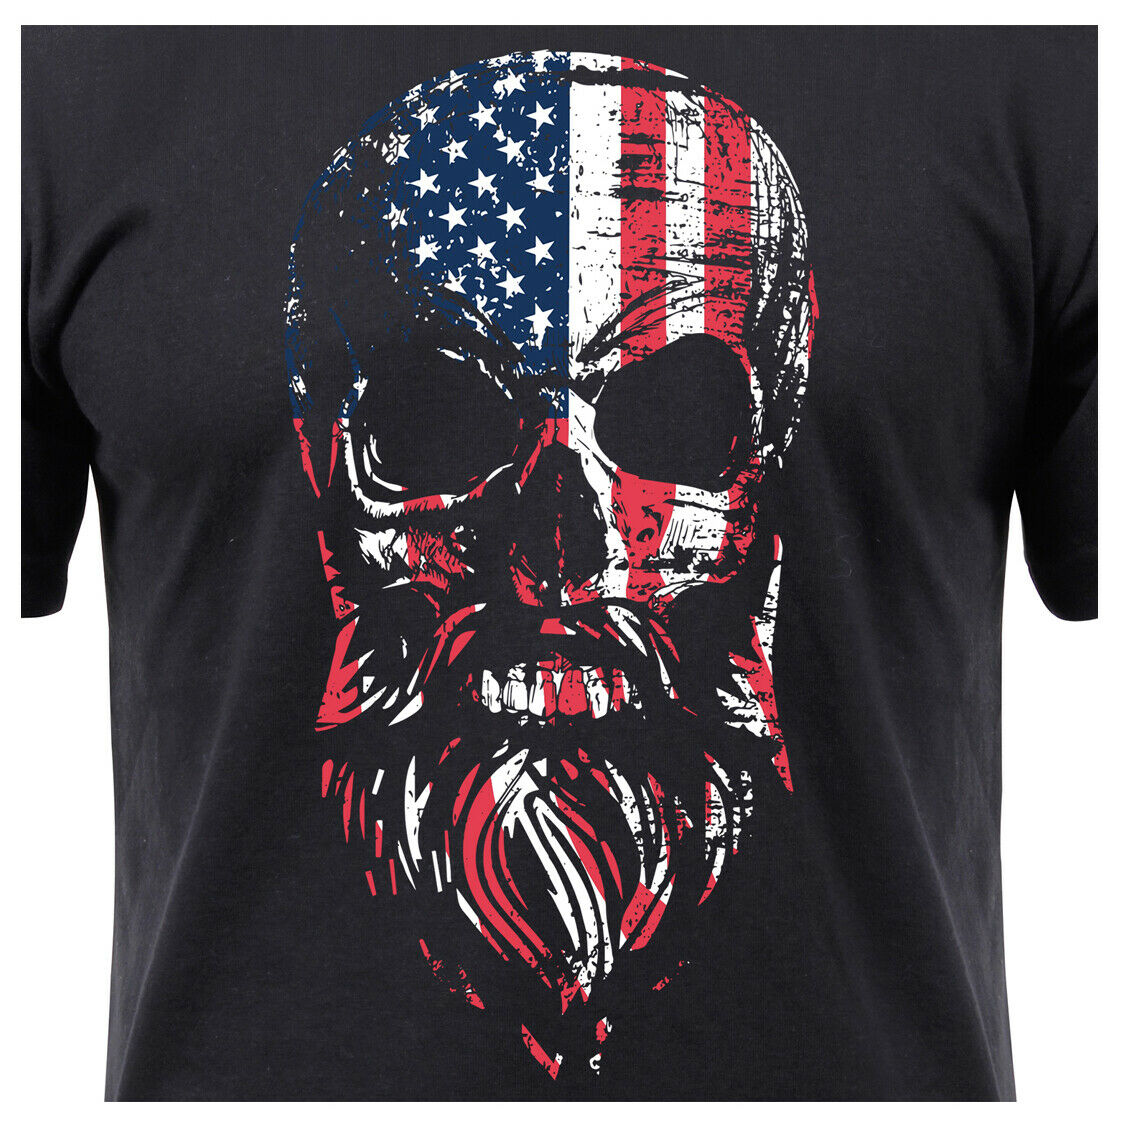 US Flag T-shirt Bearded Skull Design Shirt - Black